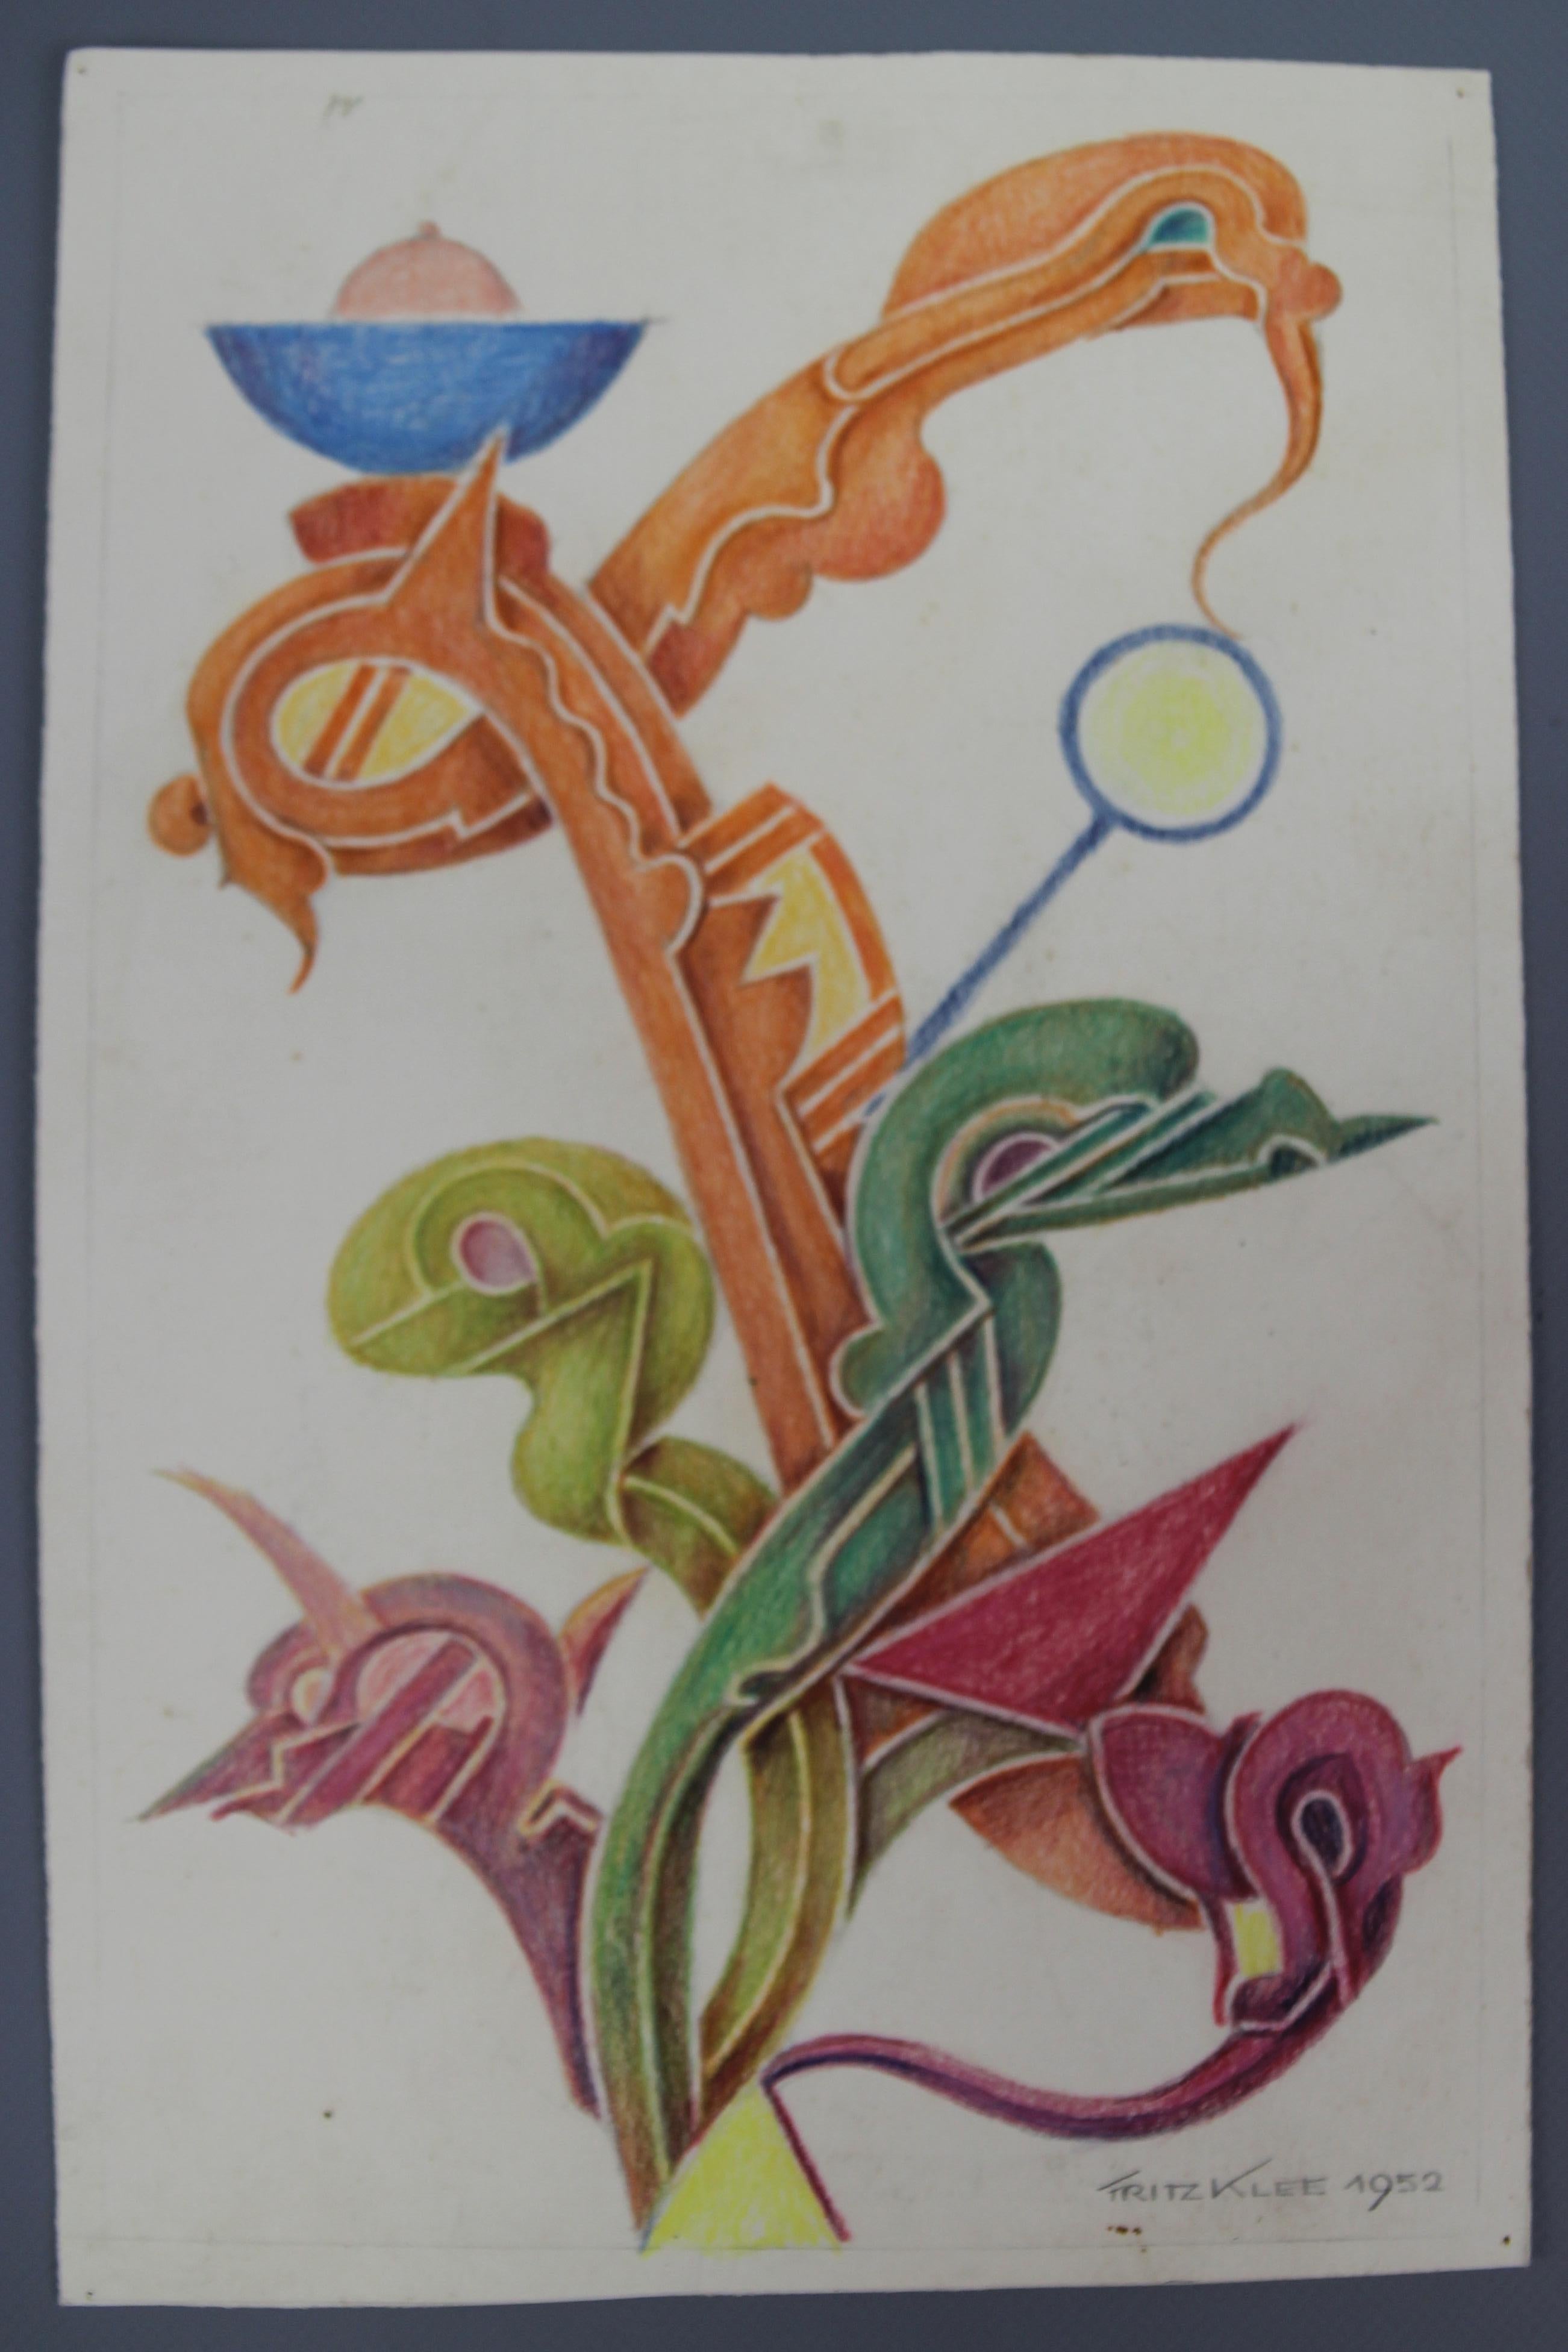 Eine prächtige abstrakte organische Handzeichnung, ein Entwurf für eine ornamentale Komposition in kräftigen, leuchtenden Farben von Fritz Klee. Buntstifte auf Papier, signiert und datiert 